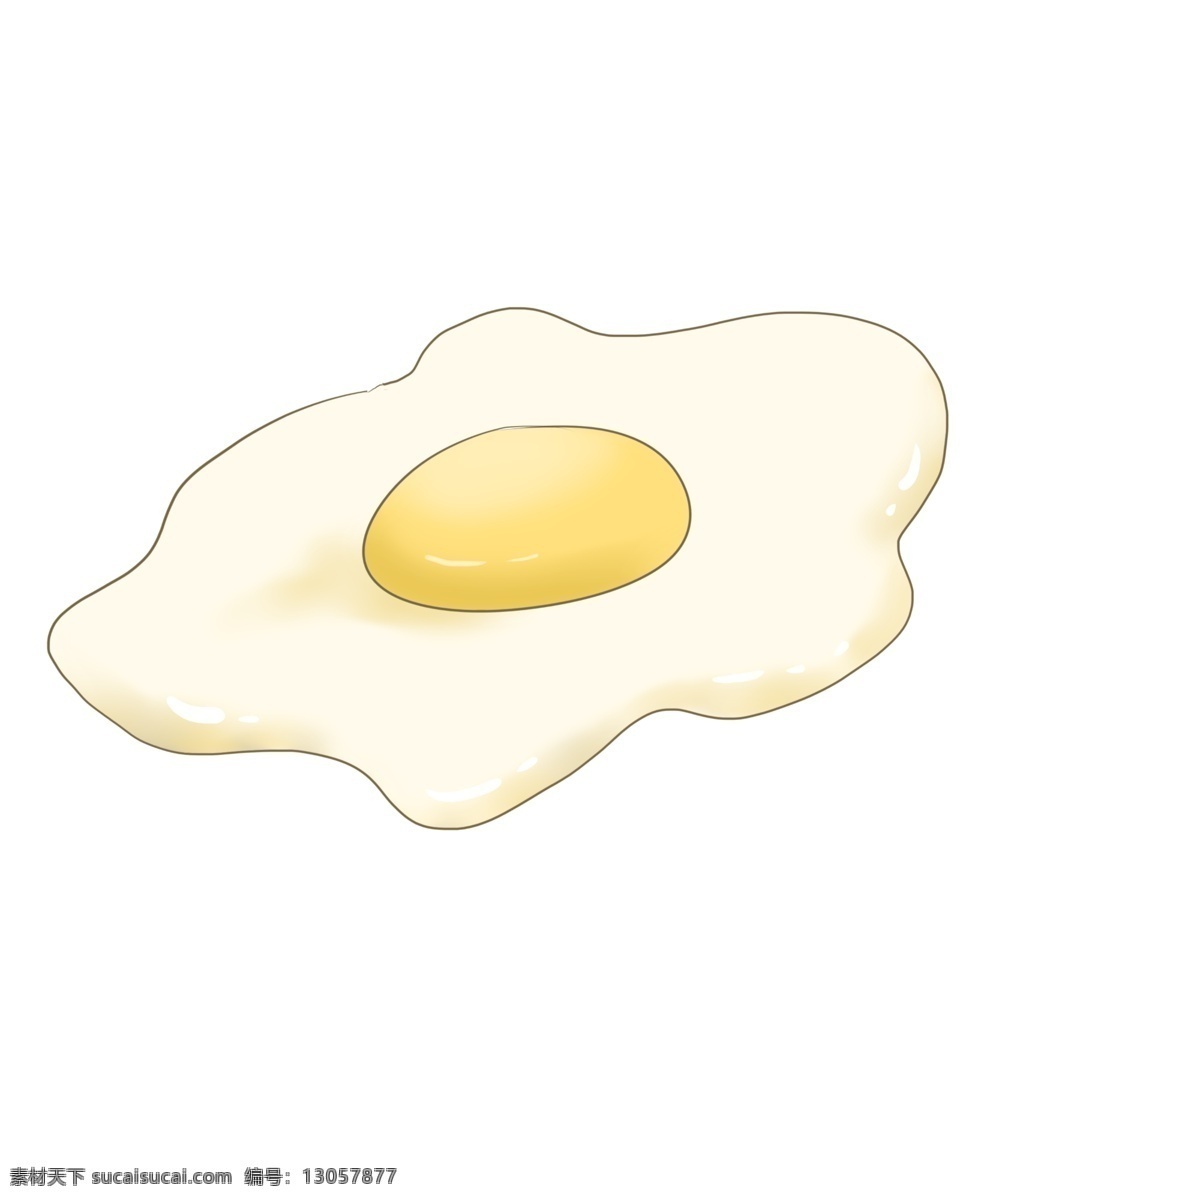 一个 荷包蛋 插画 黄色的蛋黄 白色的蛋清 鸡蛋美味小吃 溏心蛋插画 创意美食插画 营养蛋类